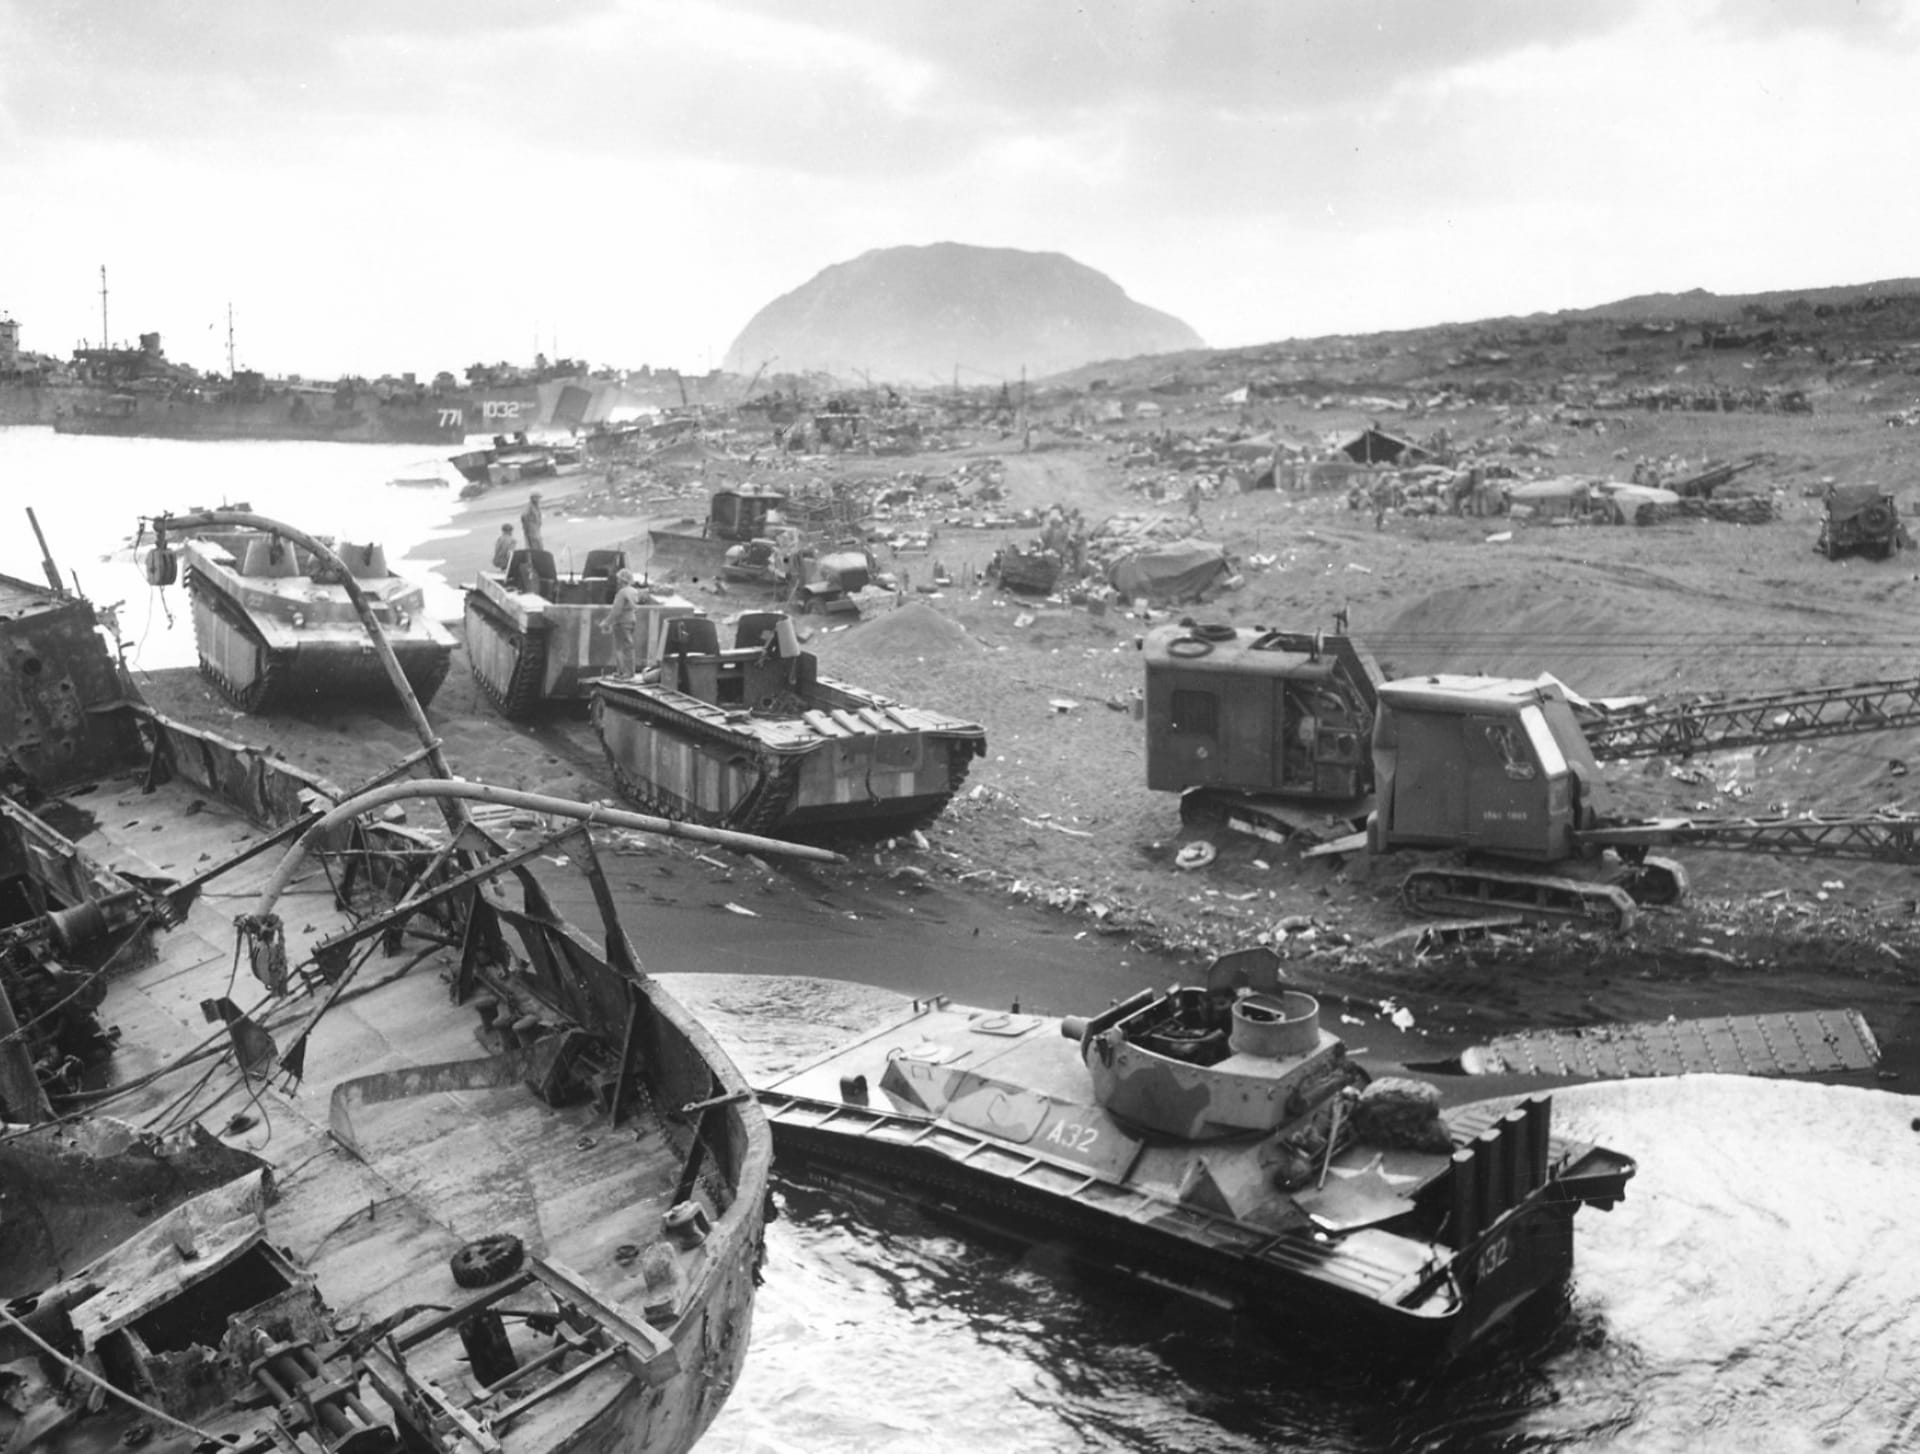 Battle Of Iwo Jima at 2048 x 2048 iPad size wallpapers HD quality